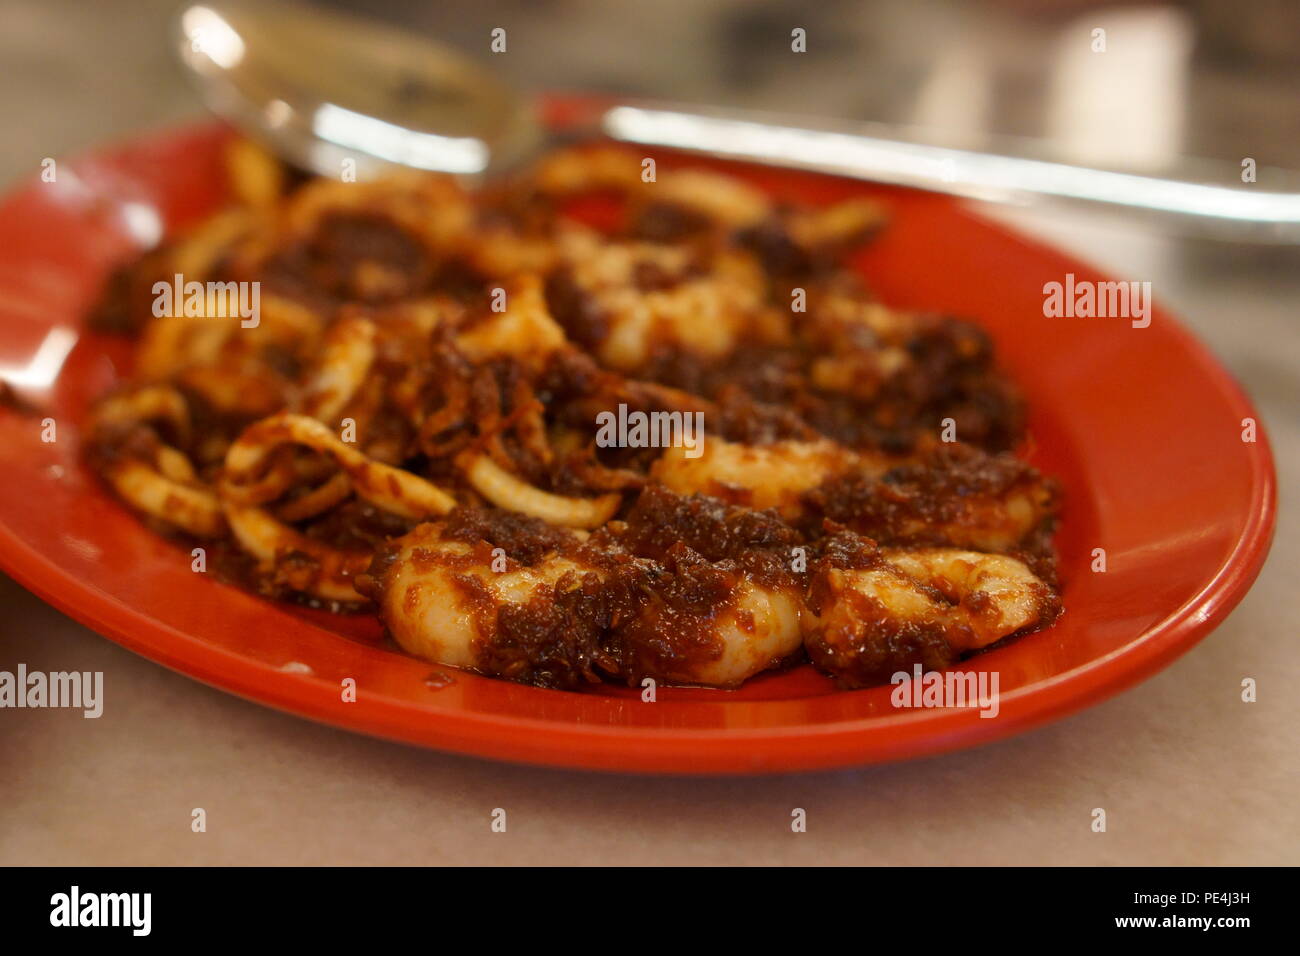 Nyonya Food Prawn and squid dish Stock Photo